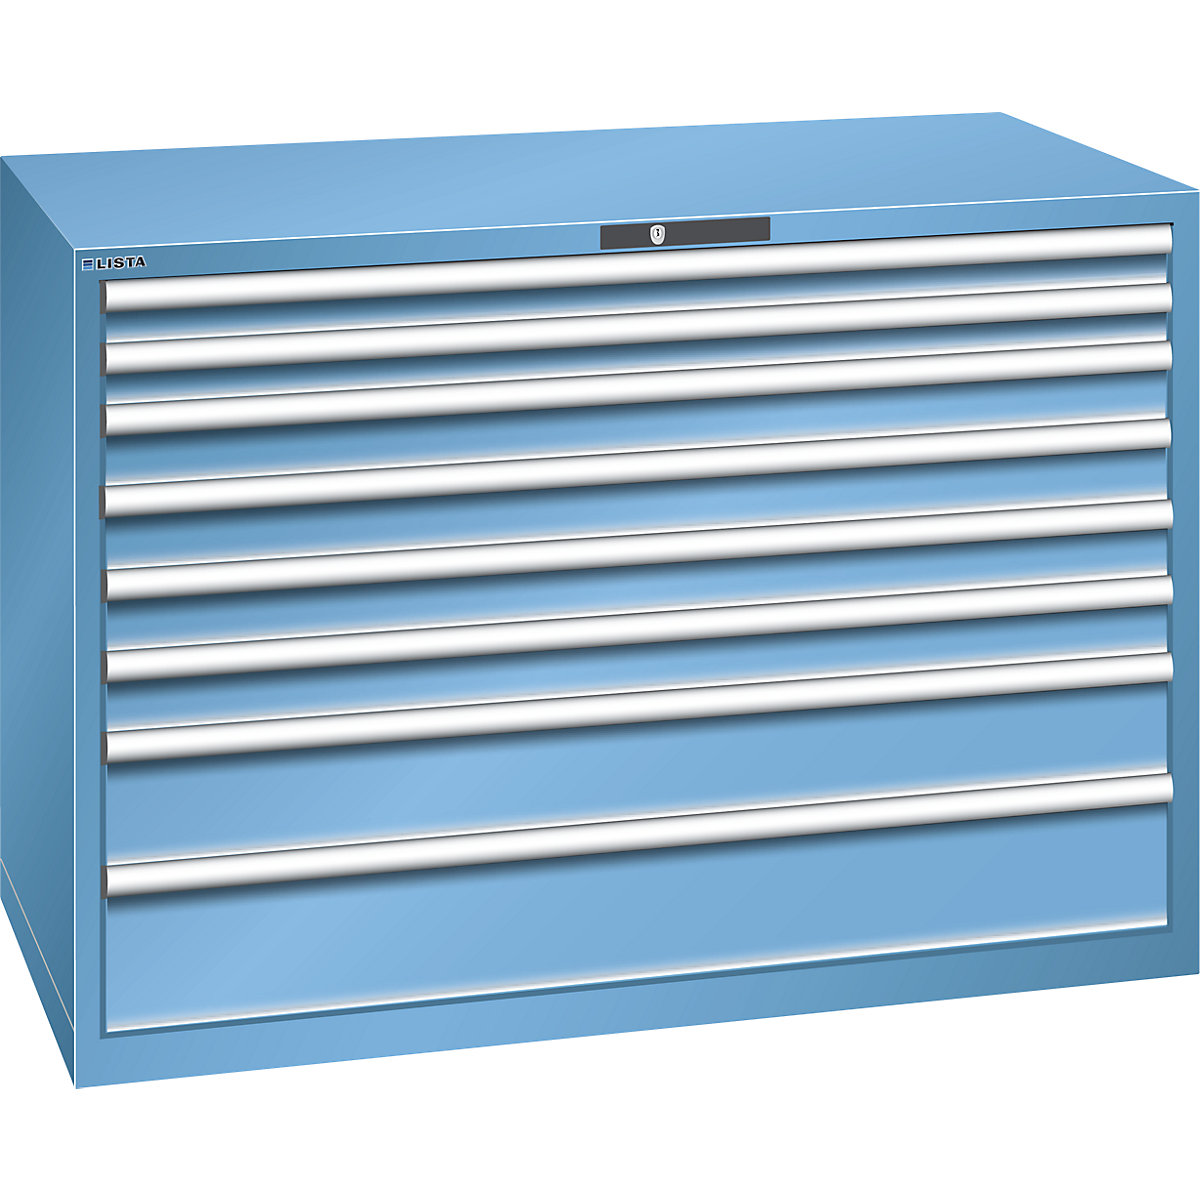 LISTA – Armoire à tiroirs en tôle d'acier, h x l 1000 x 1431 mm, 8 tiroirs, charge max. 200 kg, bleu clair